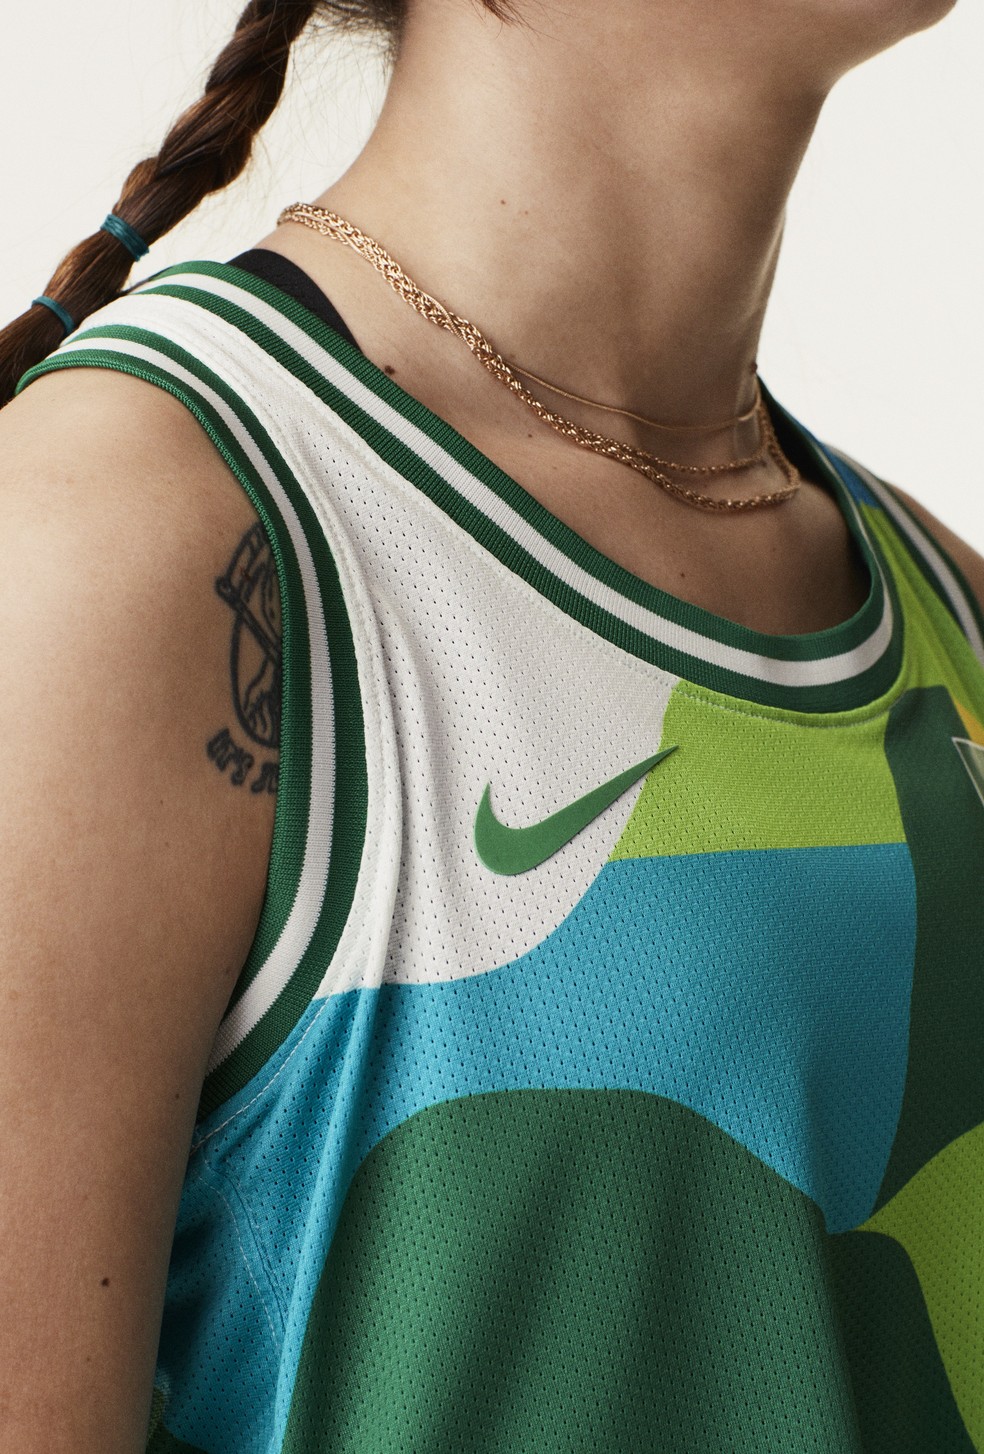 CBSk lança uniformes da Seleção para a Olimpíada — Foto: Divulgação/Nike